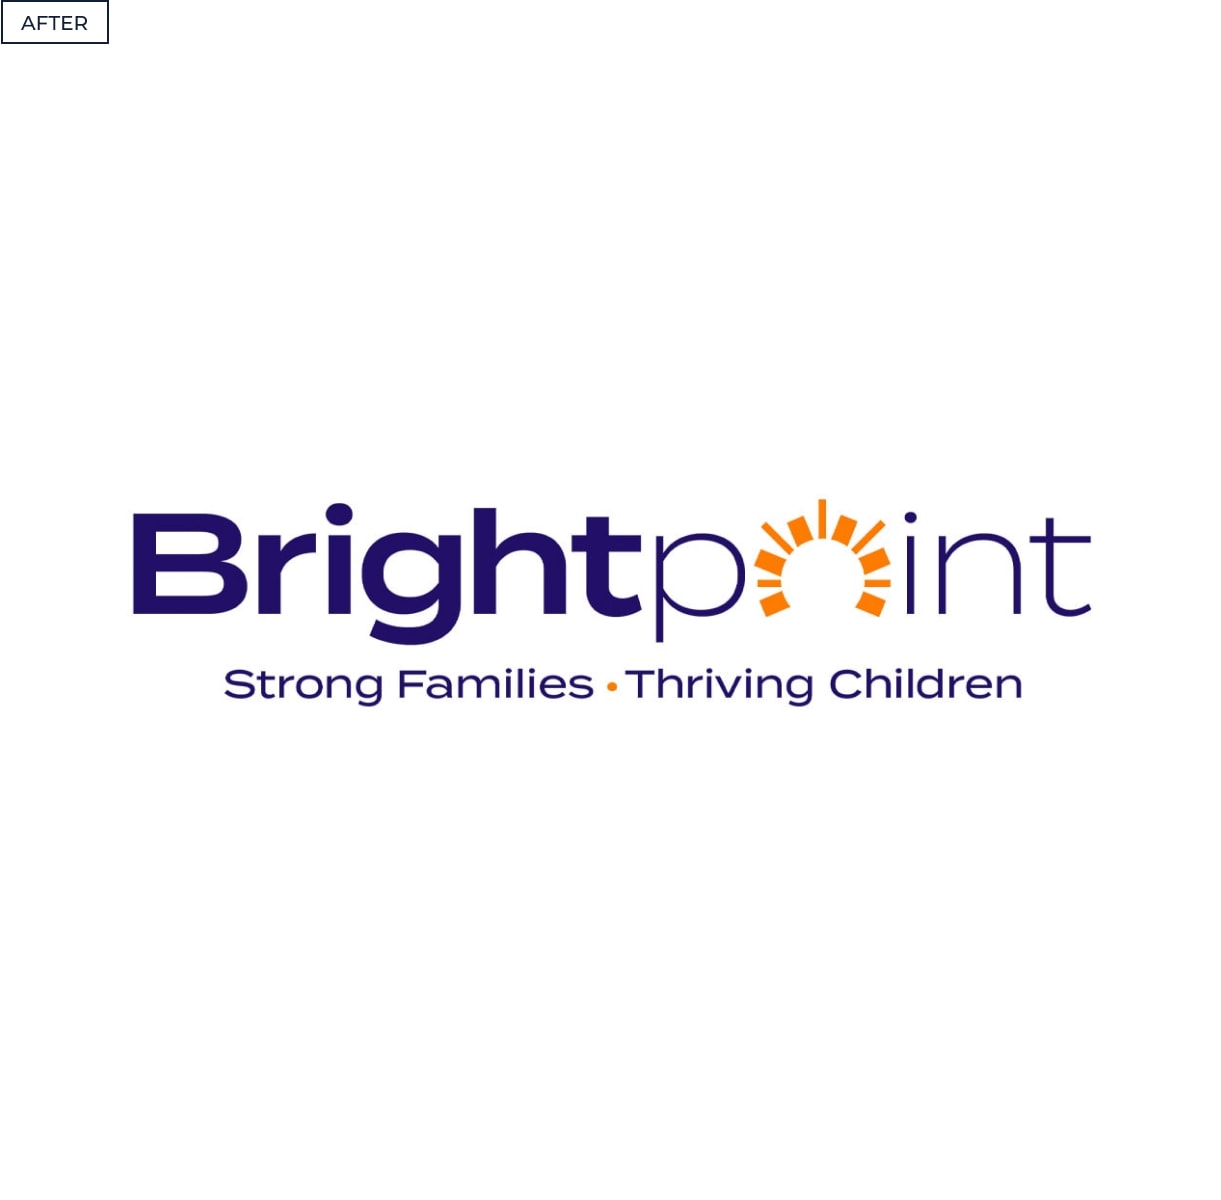 brightpoint-logo-after